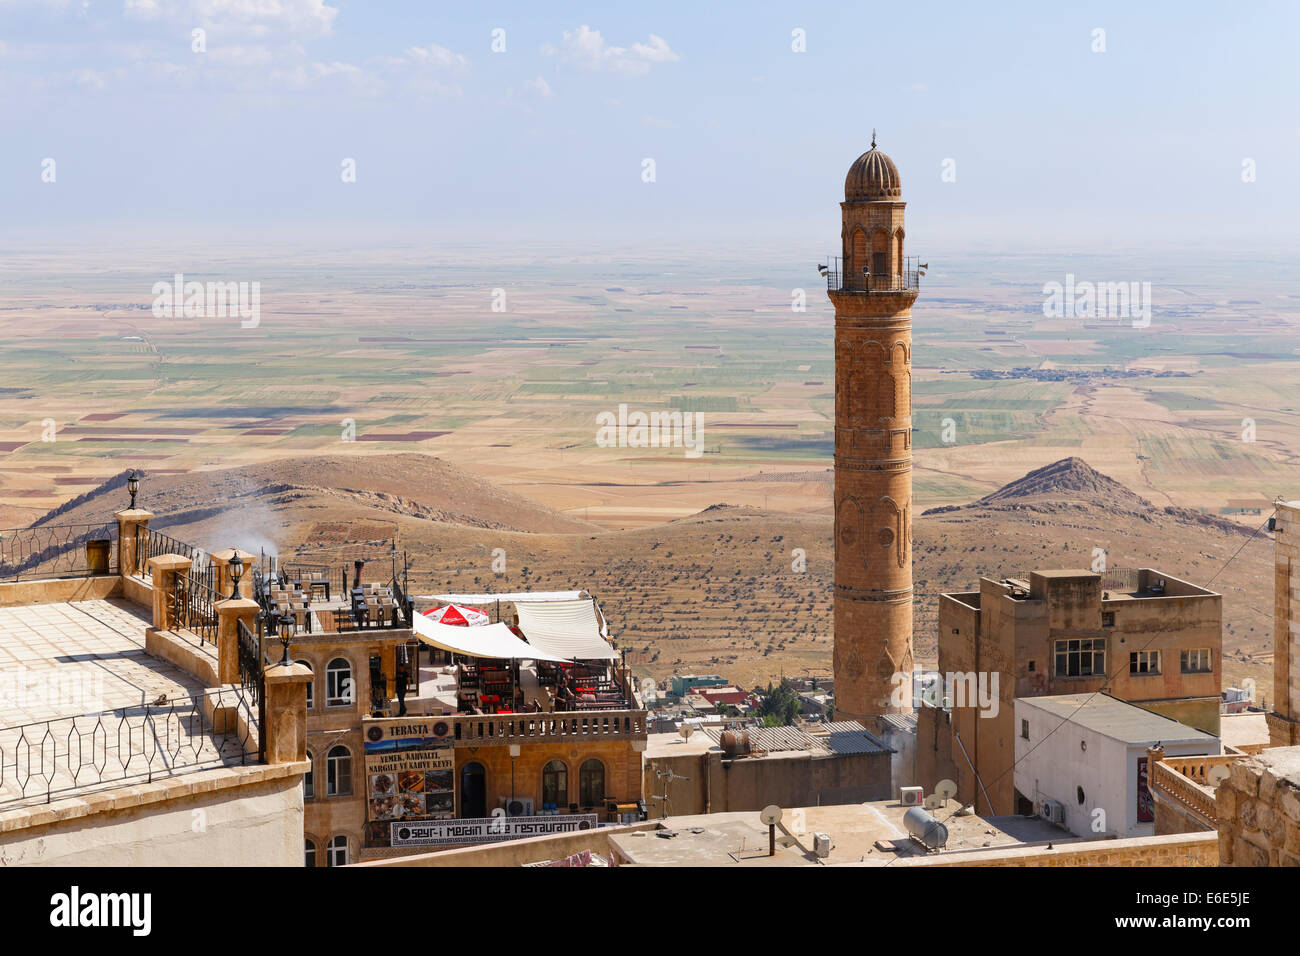 La plaine mésopotamienne et minaret de la Grande Mosquée Ulu Camii, Mardin, Région de l'Anatolie du sud-est, l'Anatolie, Turquie Banque D'Images